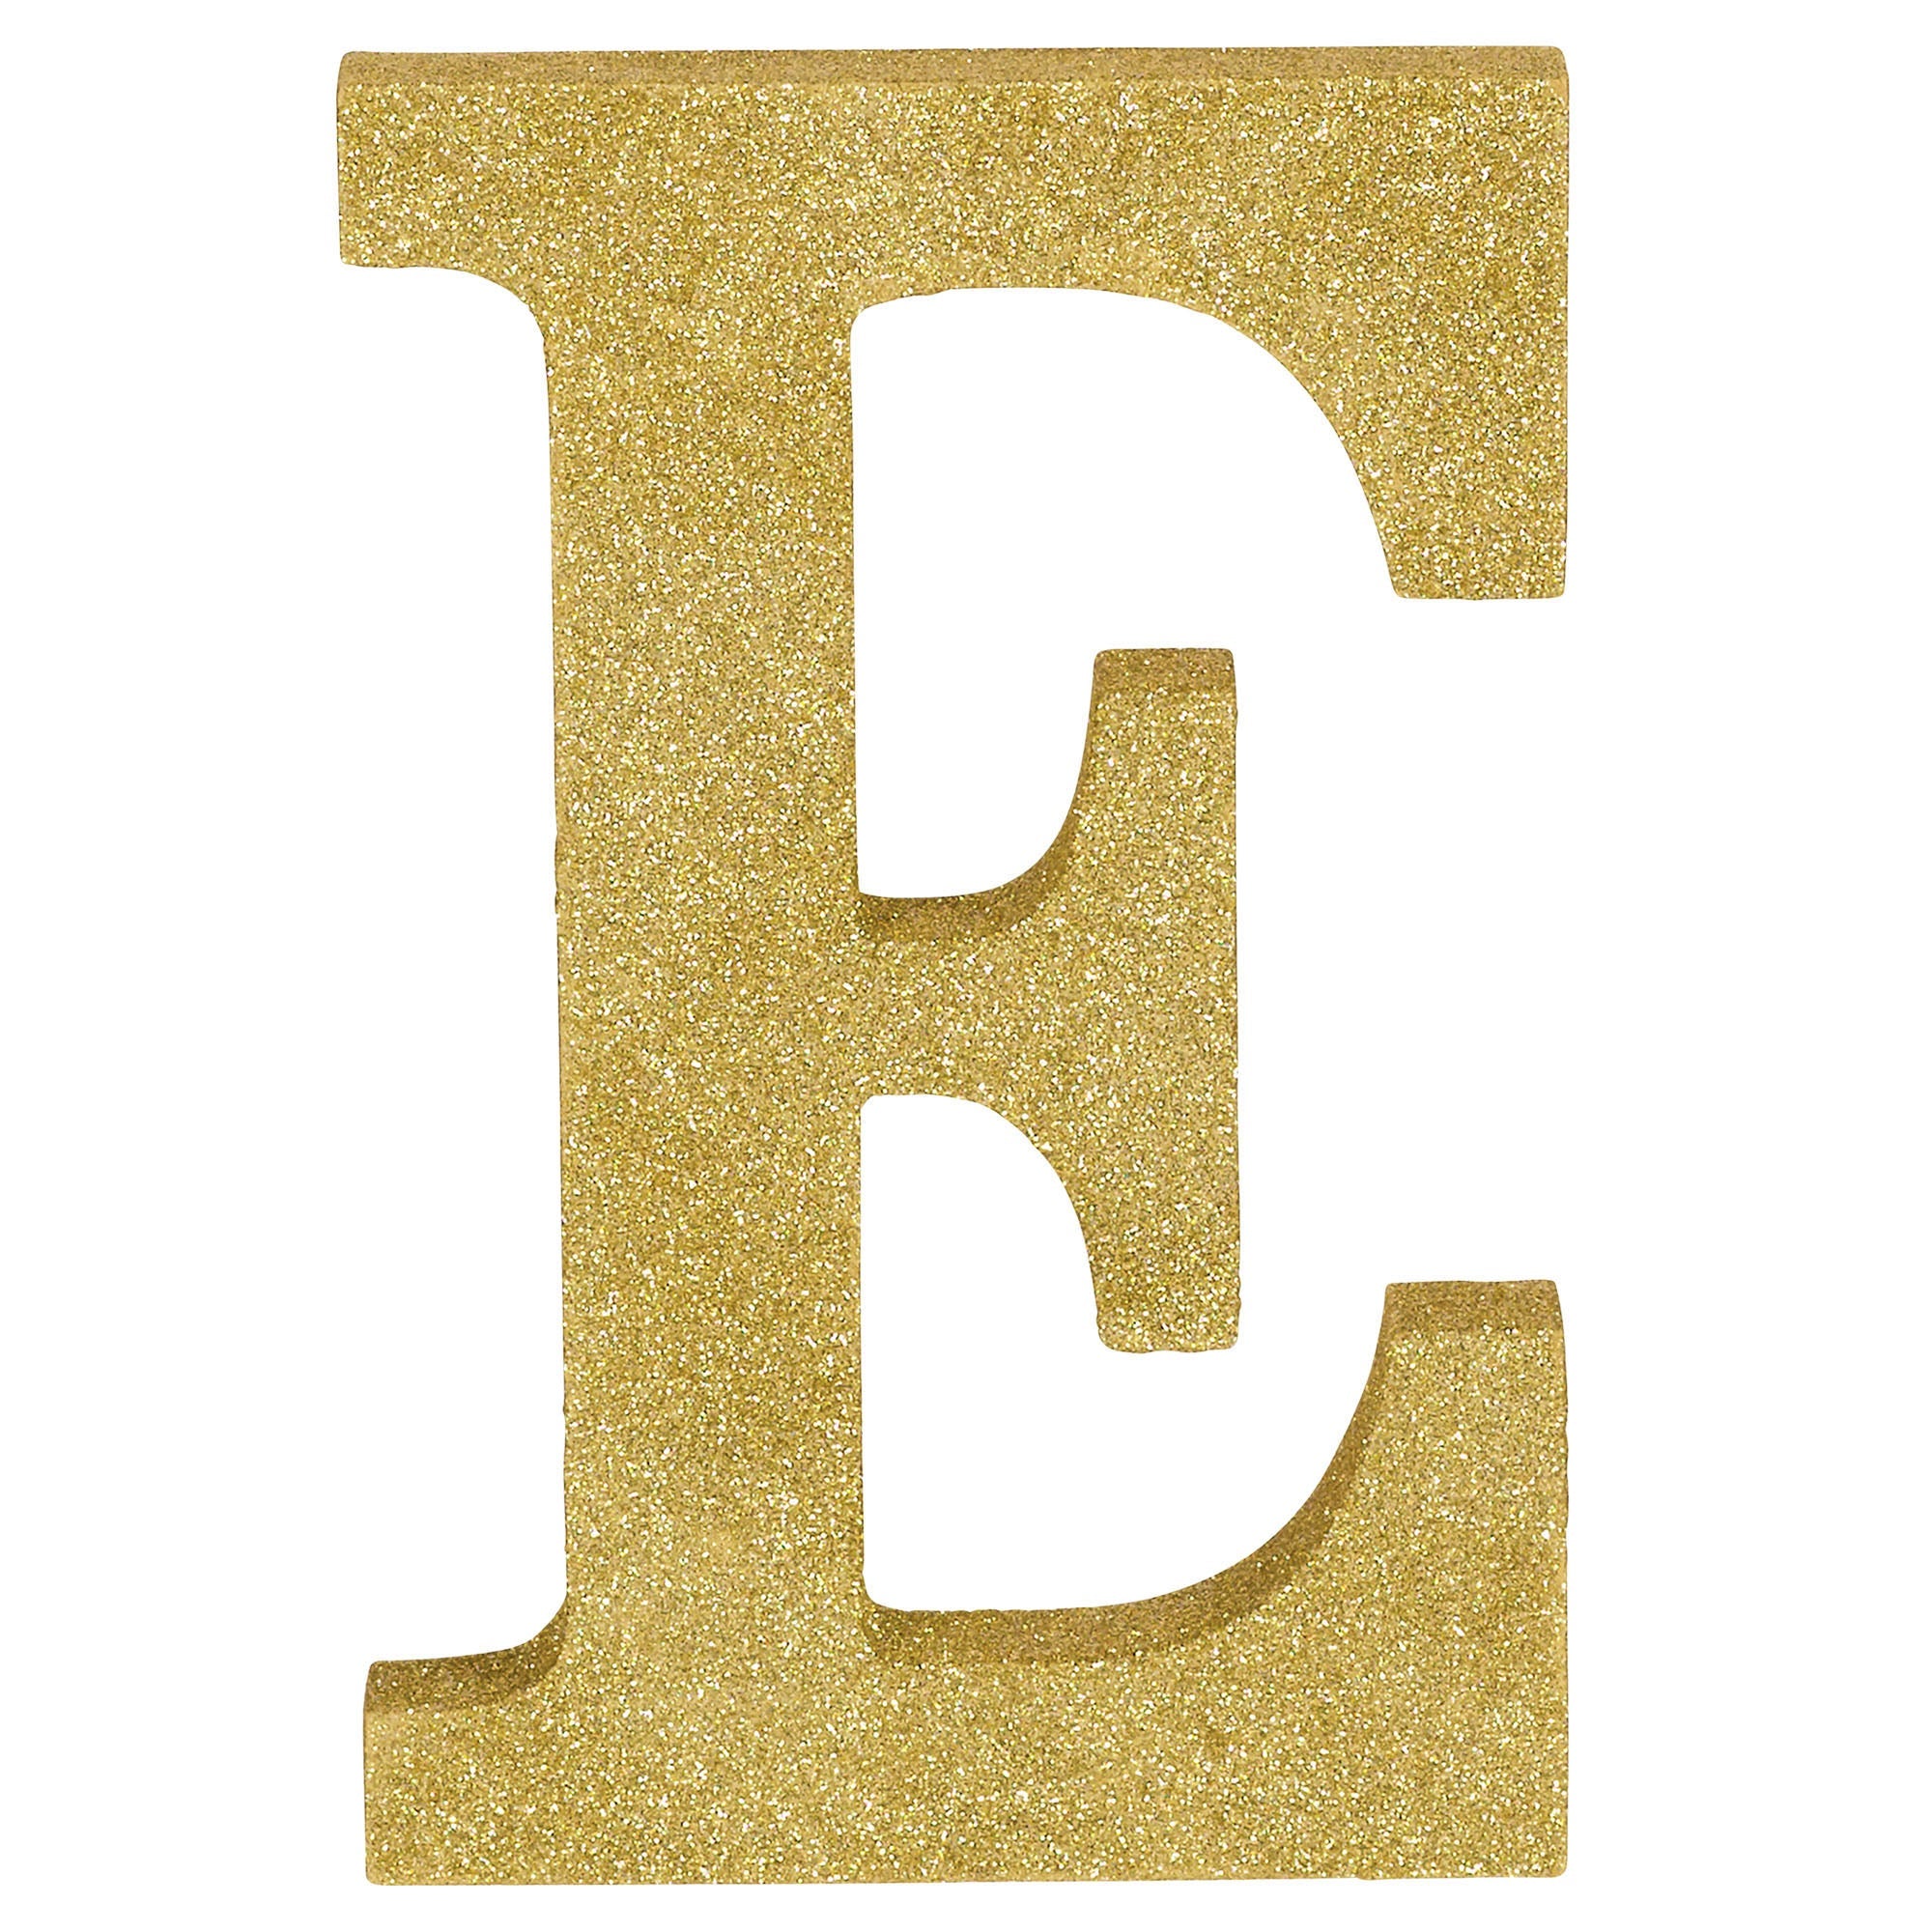 Letter E Glitter MDF Decoration  Gold  8.875x5.75x1in
